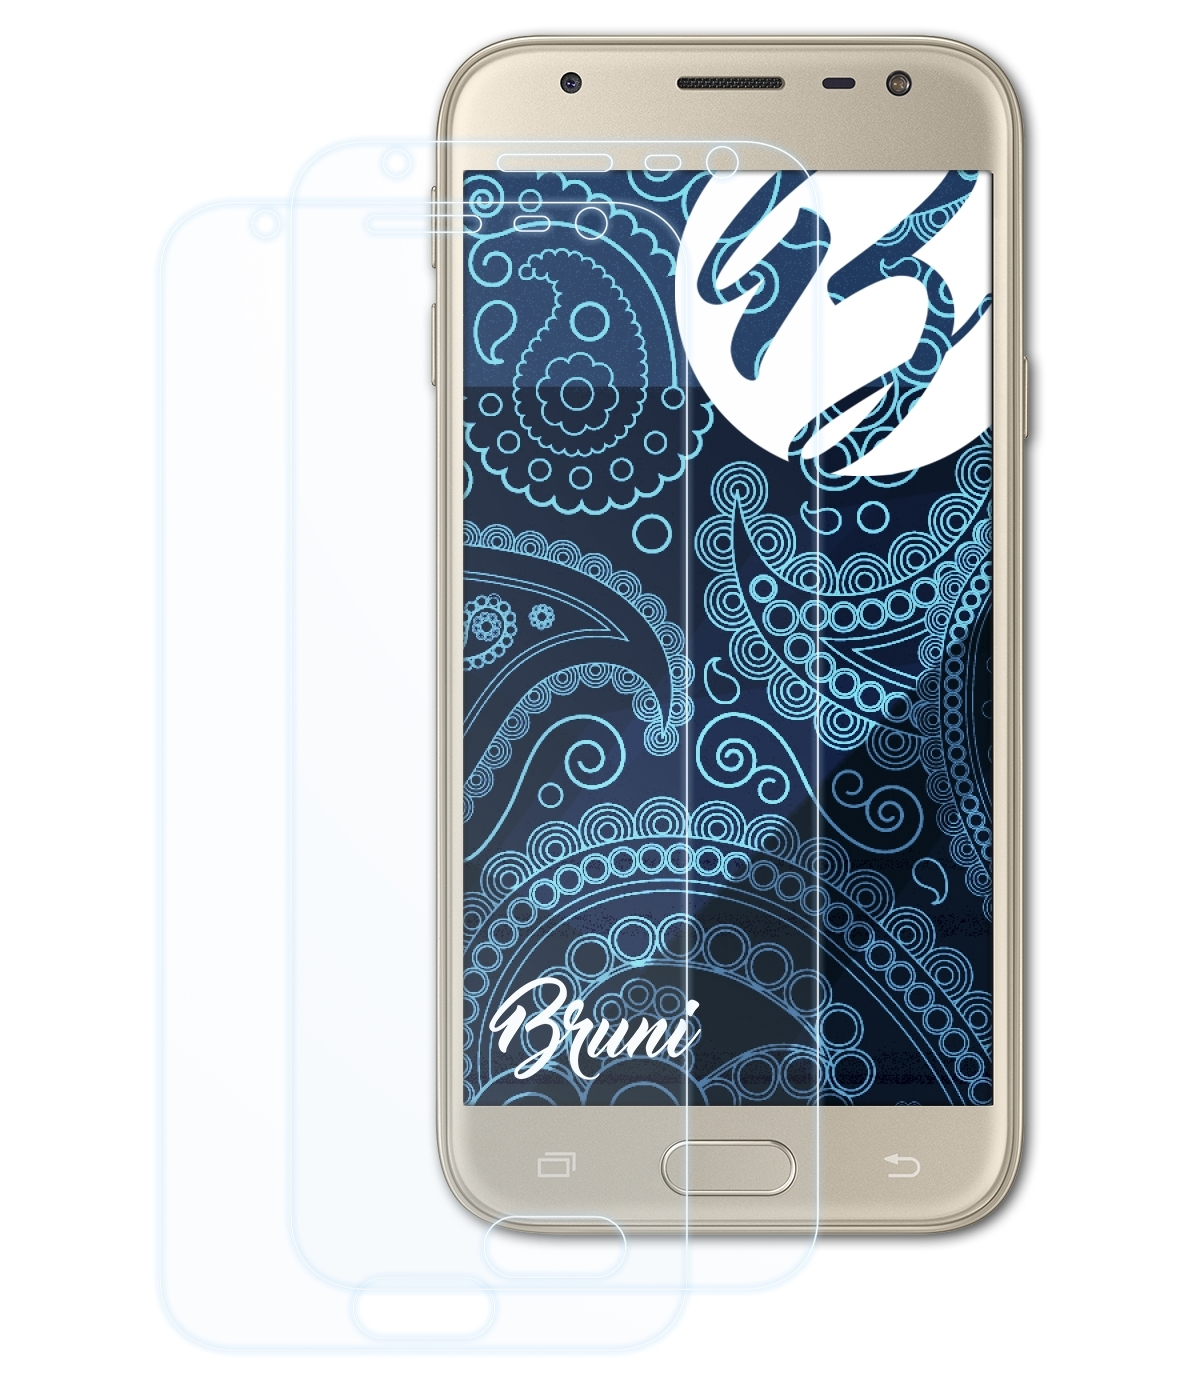 BRUNI 2x Basics-Clear Samsung J3 (2017)) Schutzfolie(für Galaxy